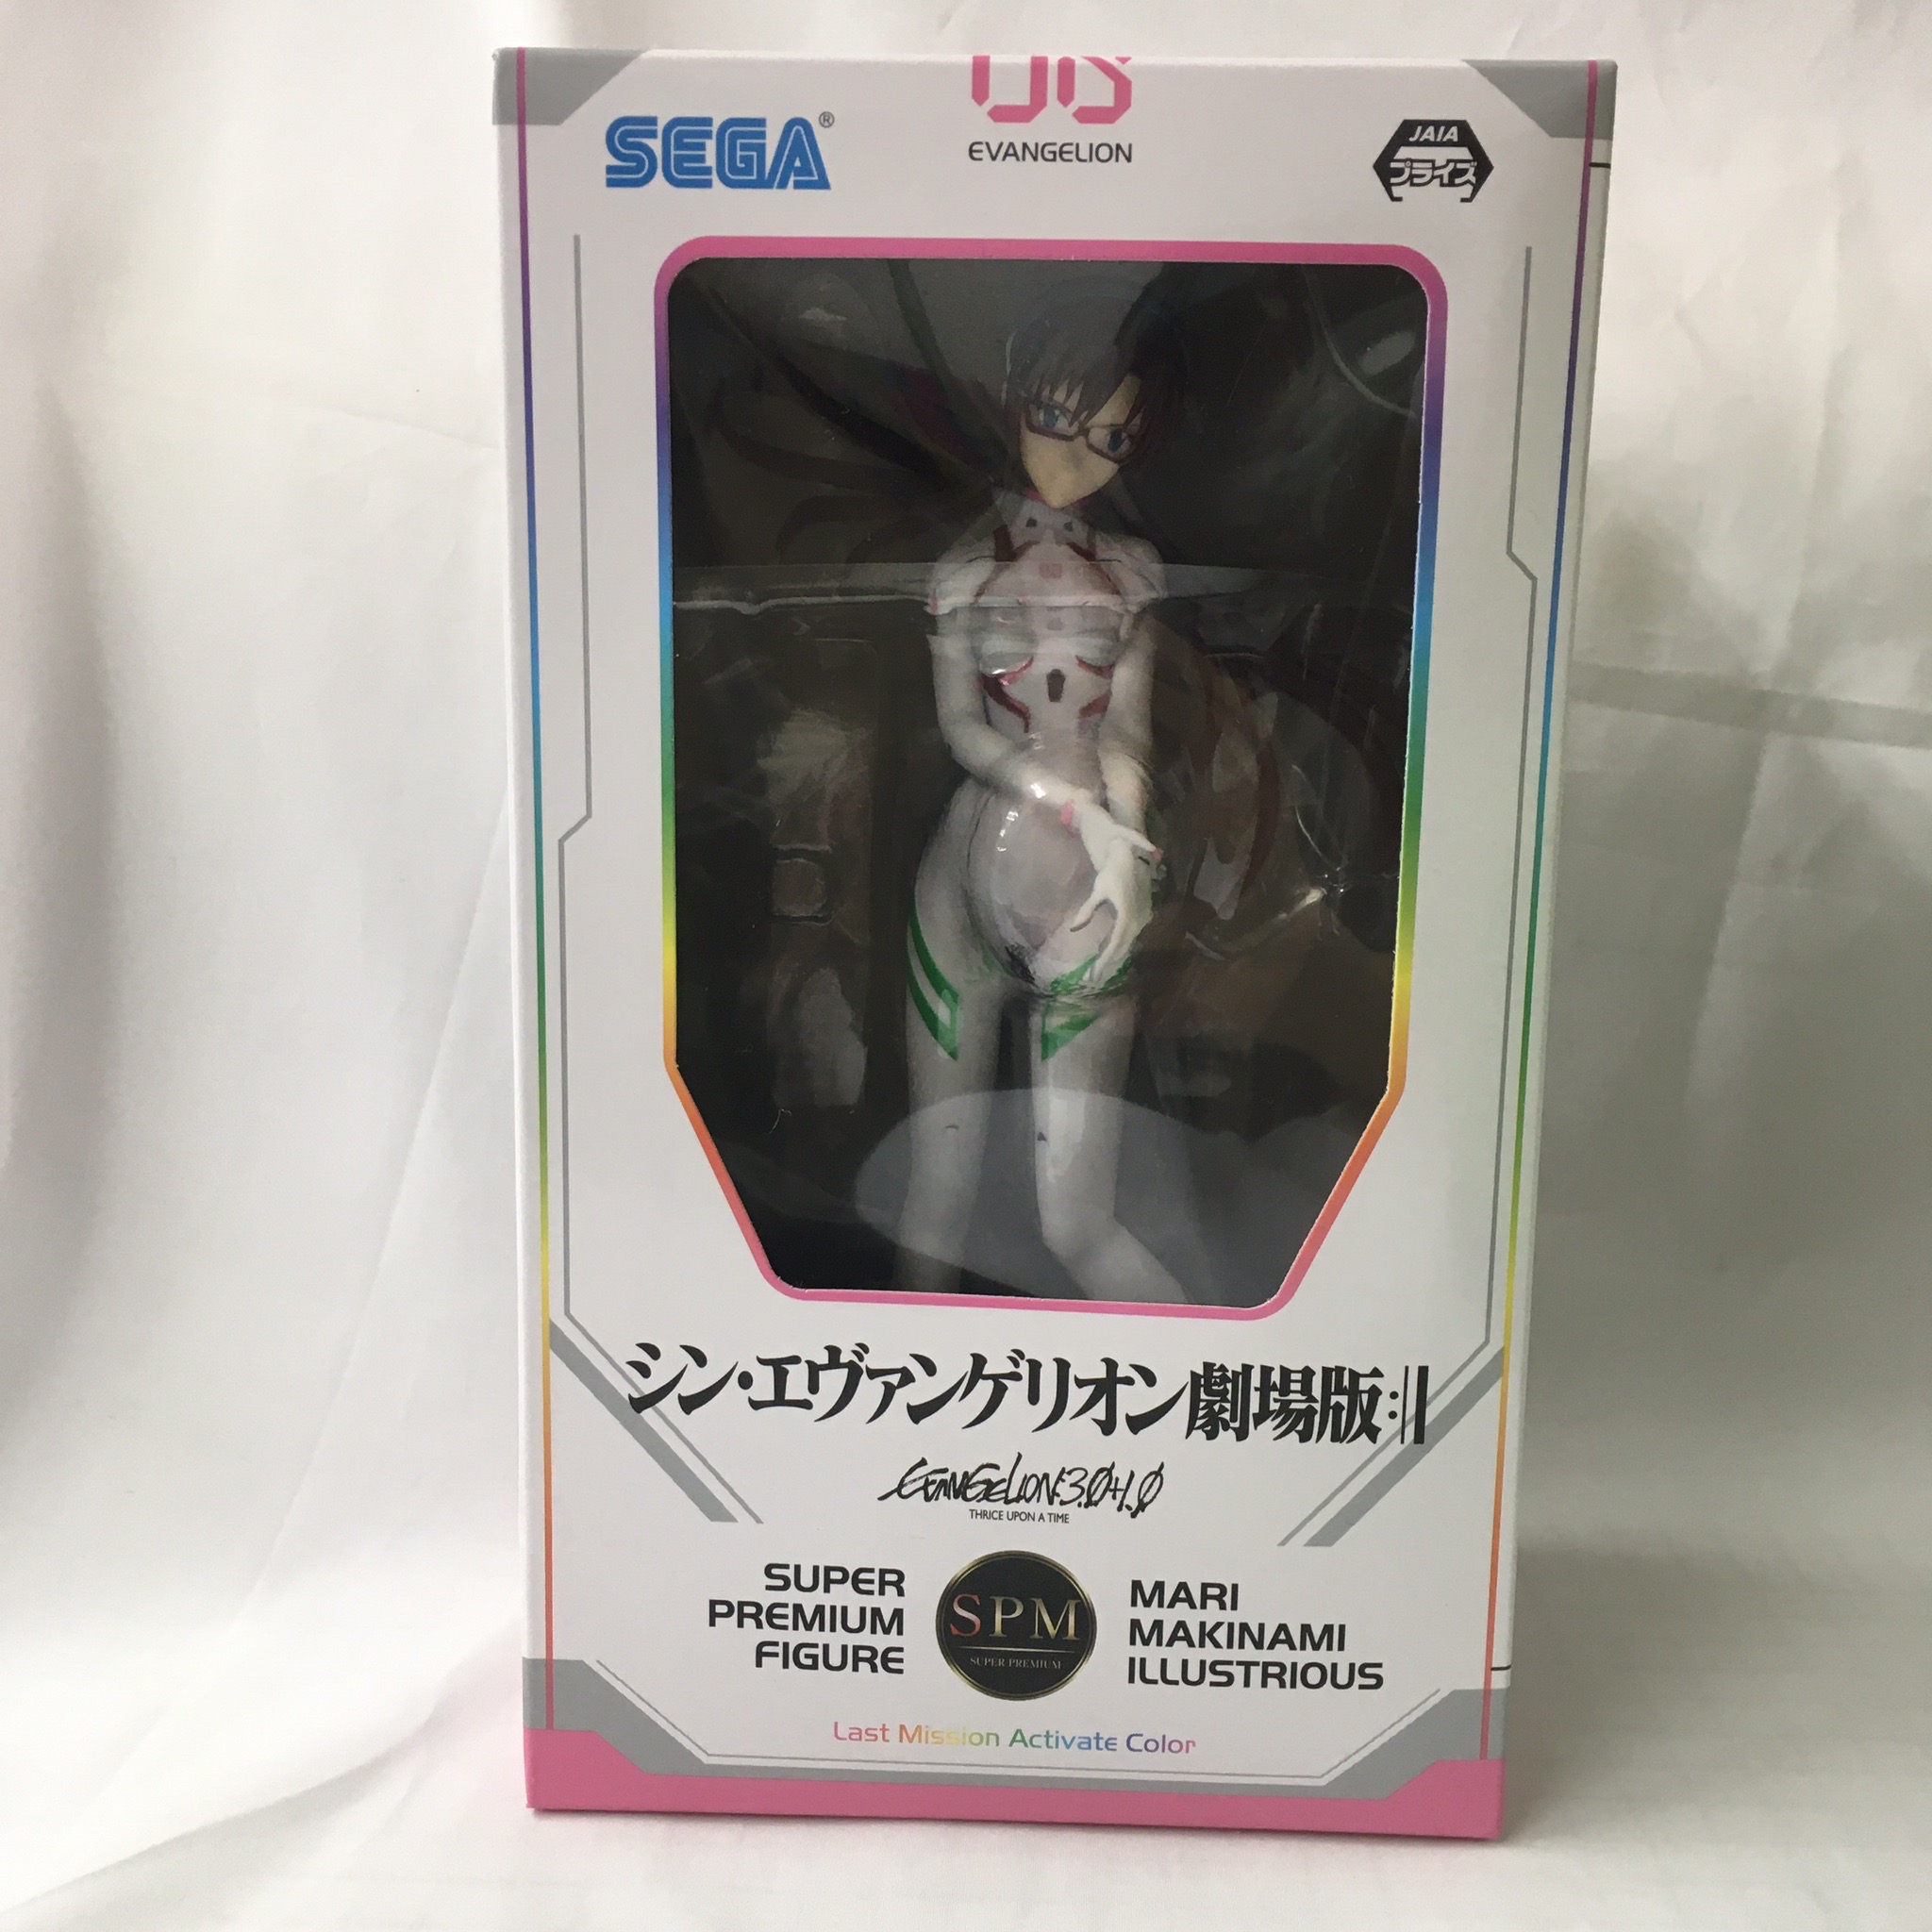 Sega Shin Evangelion Theatrical Edition Super Premium Figure “Makinami Mari Illustrious” ~Last Mission Activate Color~ 1059098